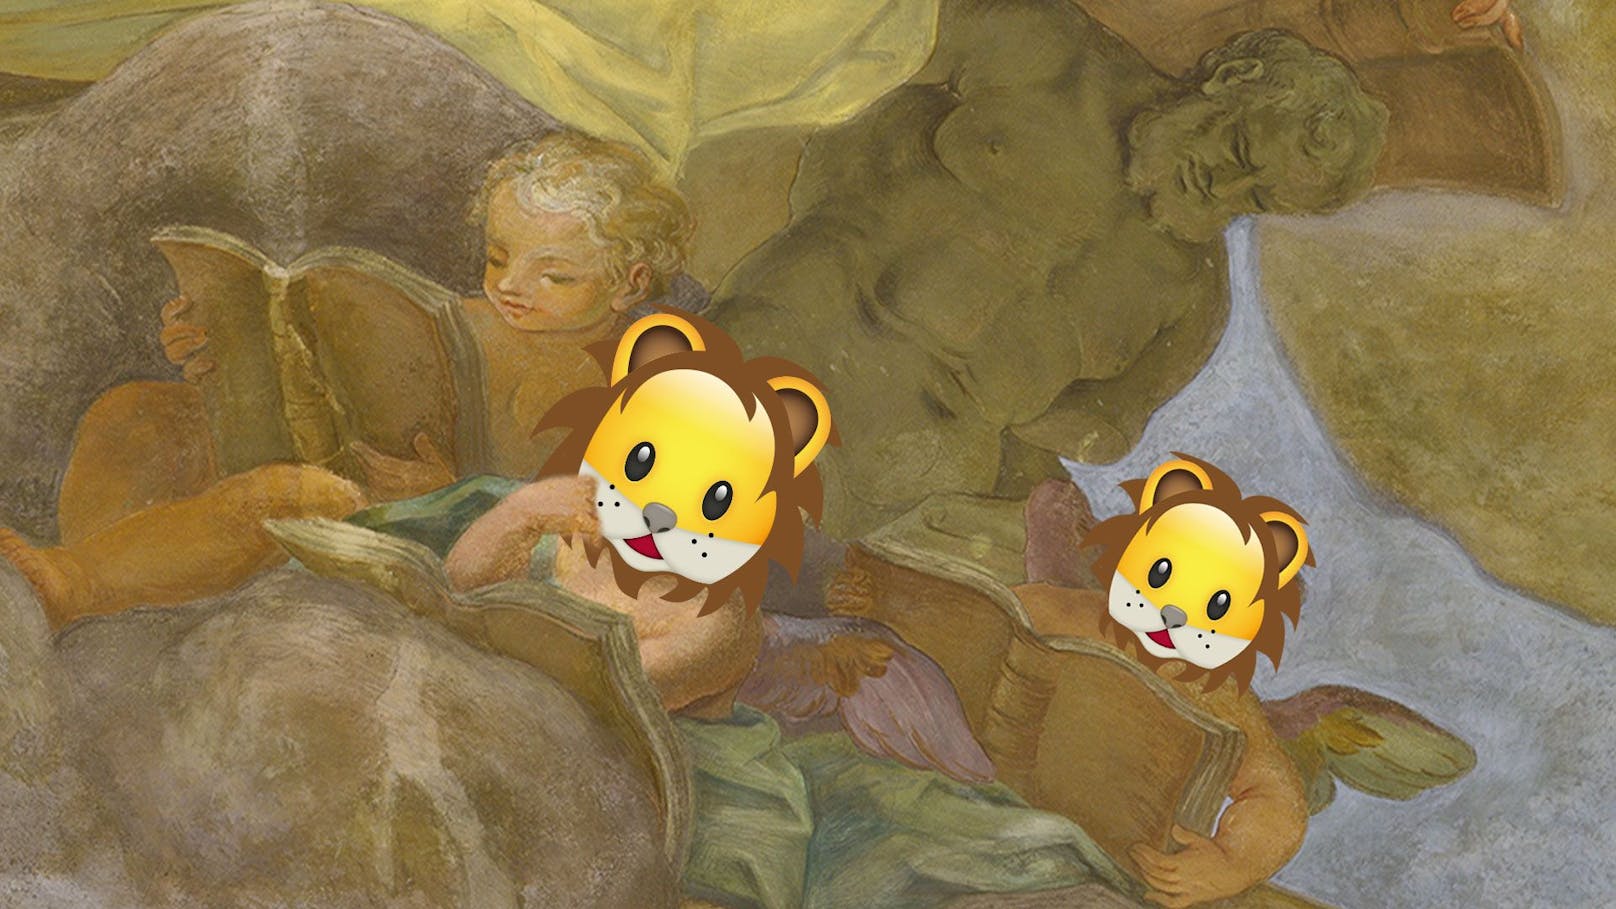 Kinder können sich am Osterwochenende in der Nationalbibliothek auf die Suche nach Löwen machen.